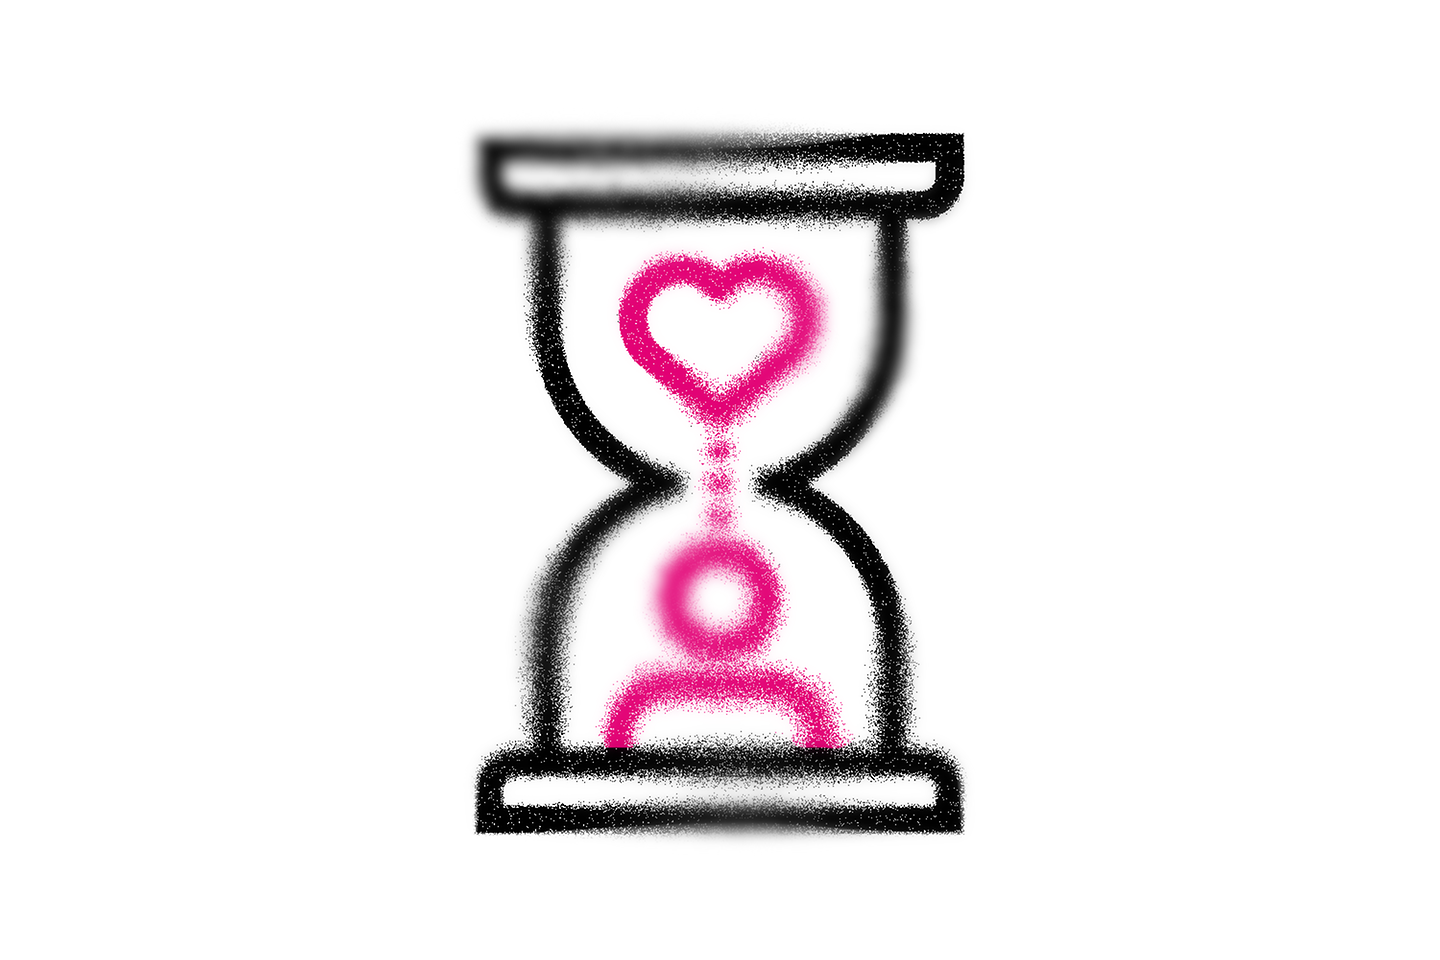 Reloj de arena que representa un corazón y una persona